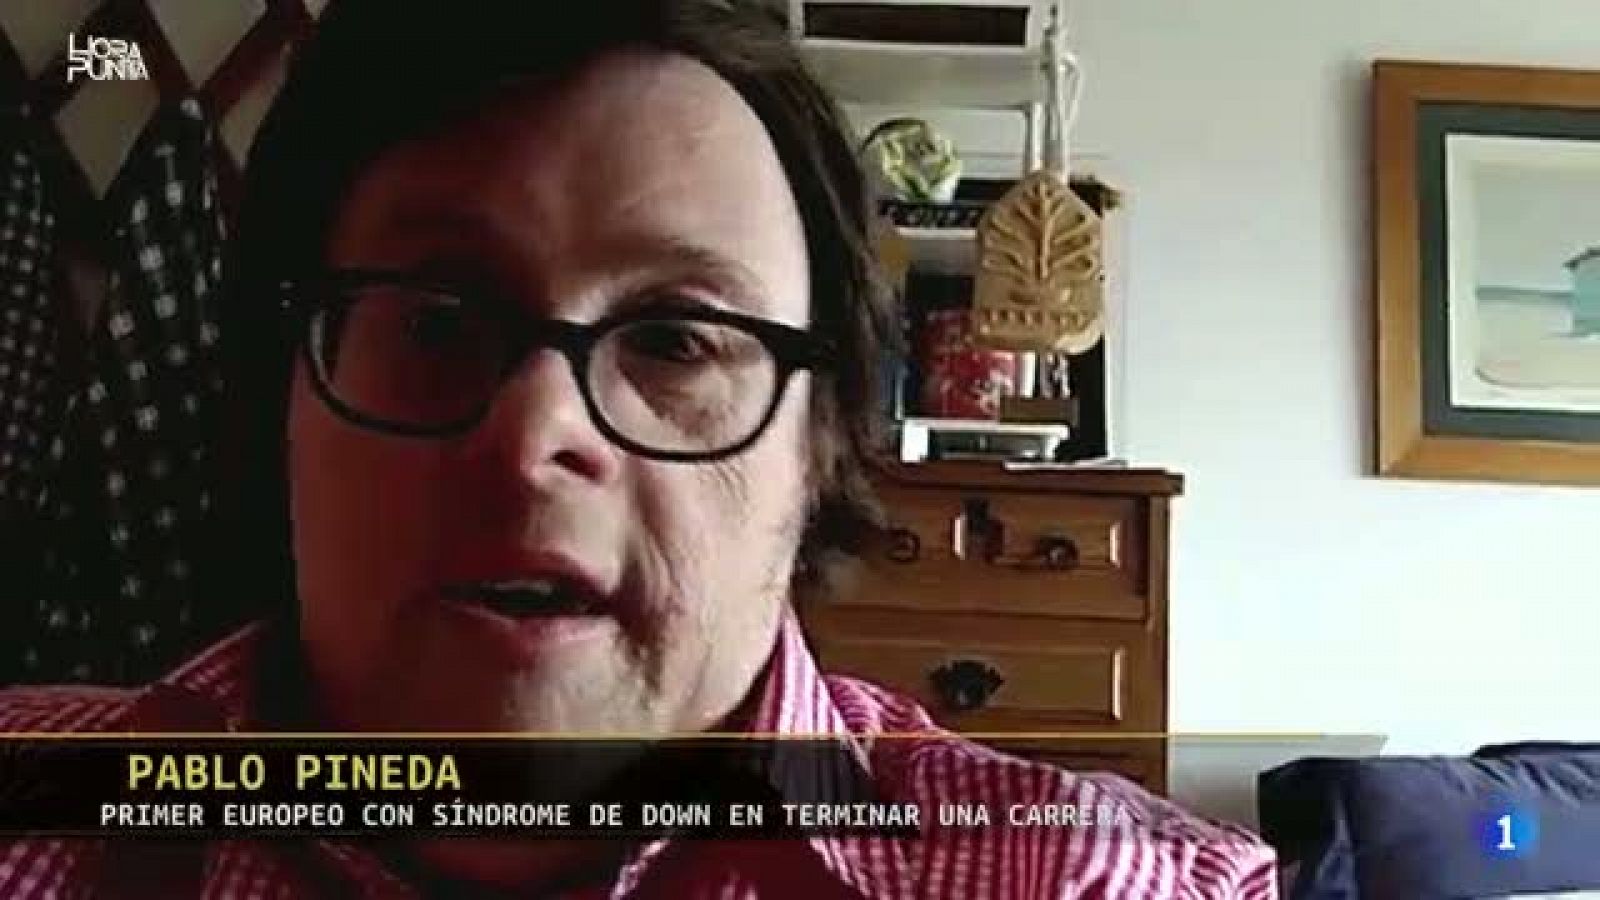 Hora Punta - Pablo Pineda, primer europeo con síndrome de Down en terminar una carrera, tiene un mensaje para nosotros